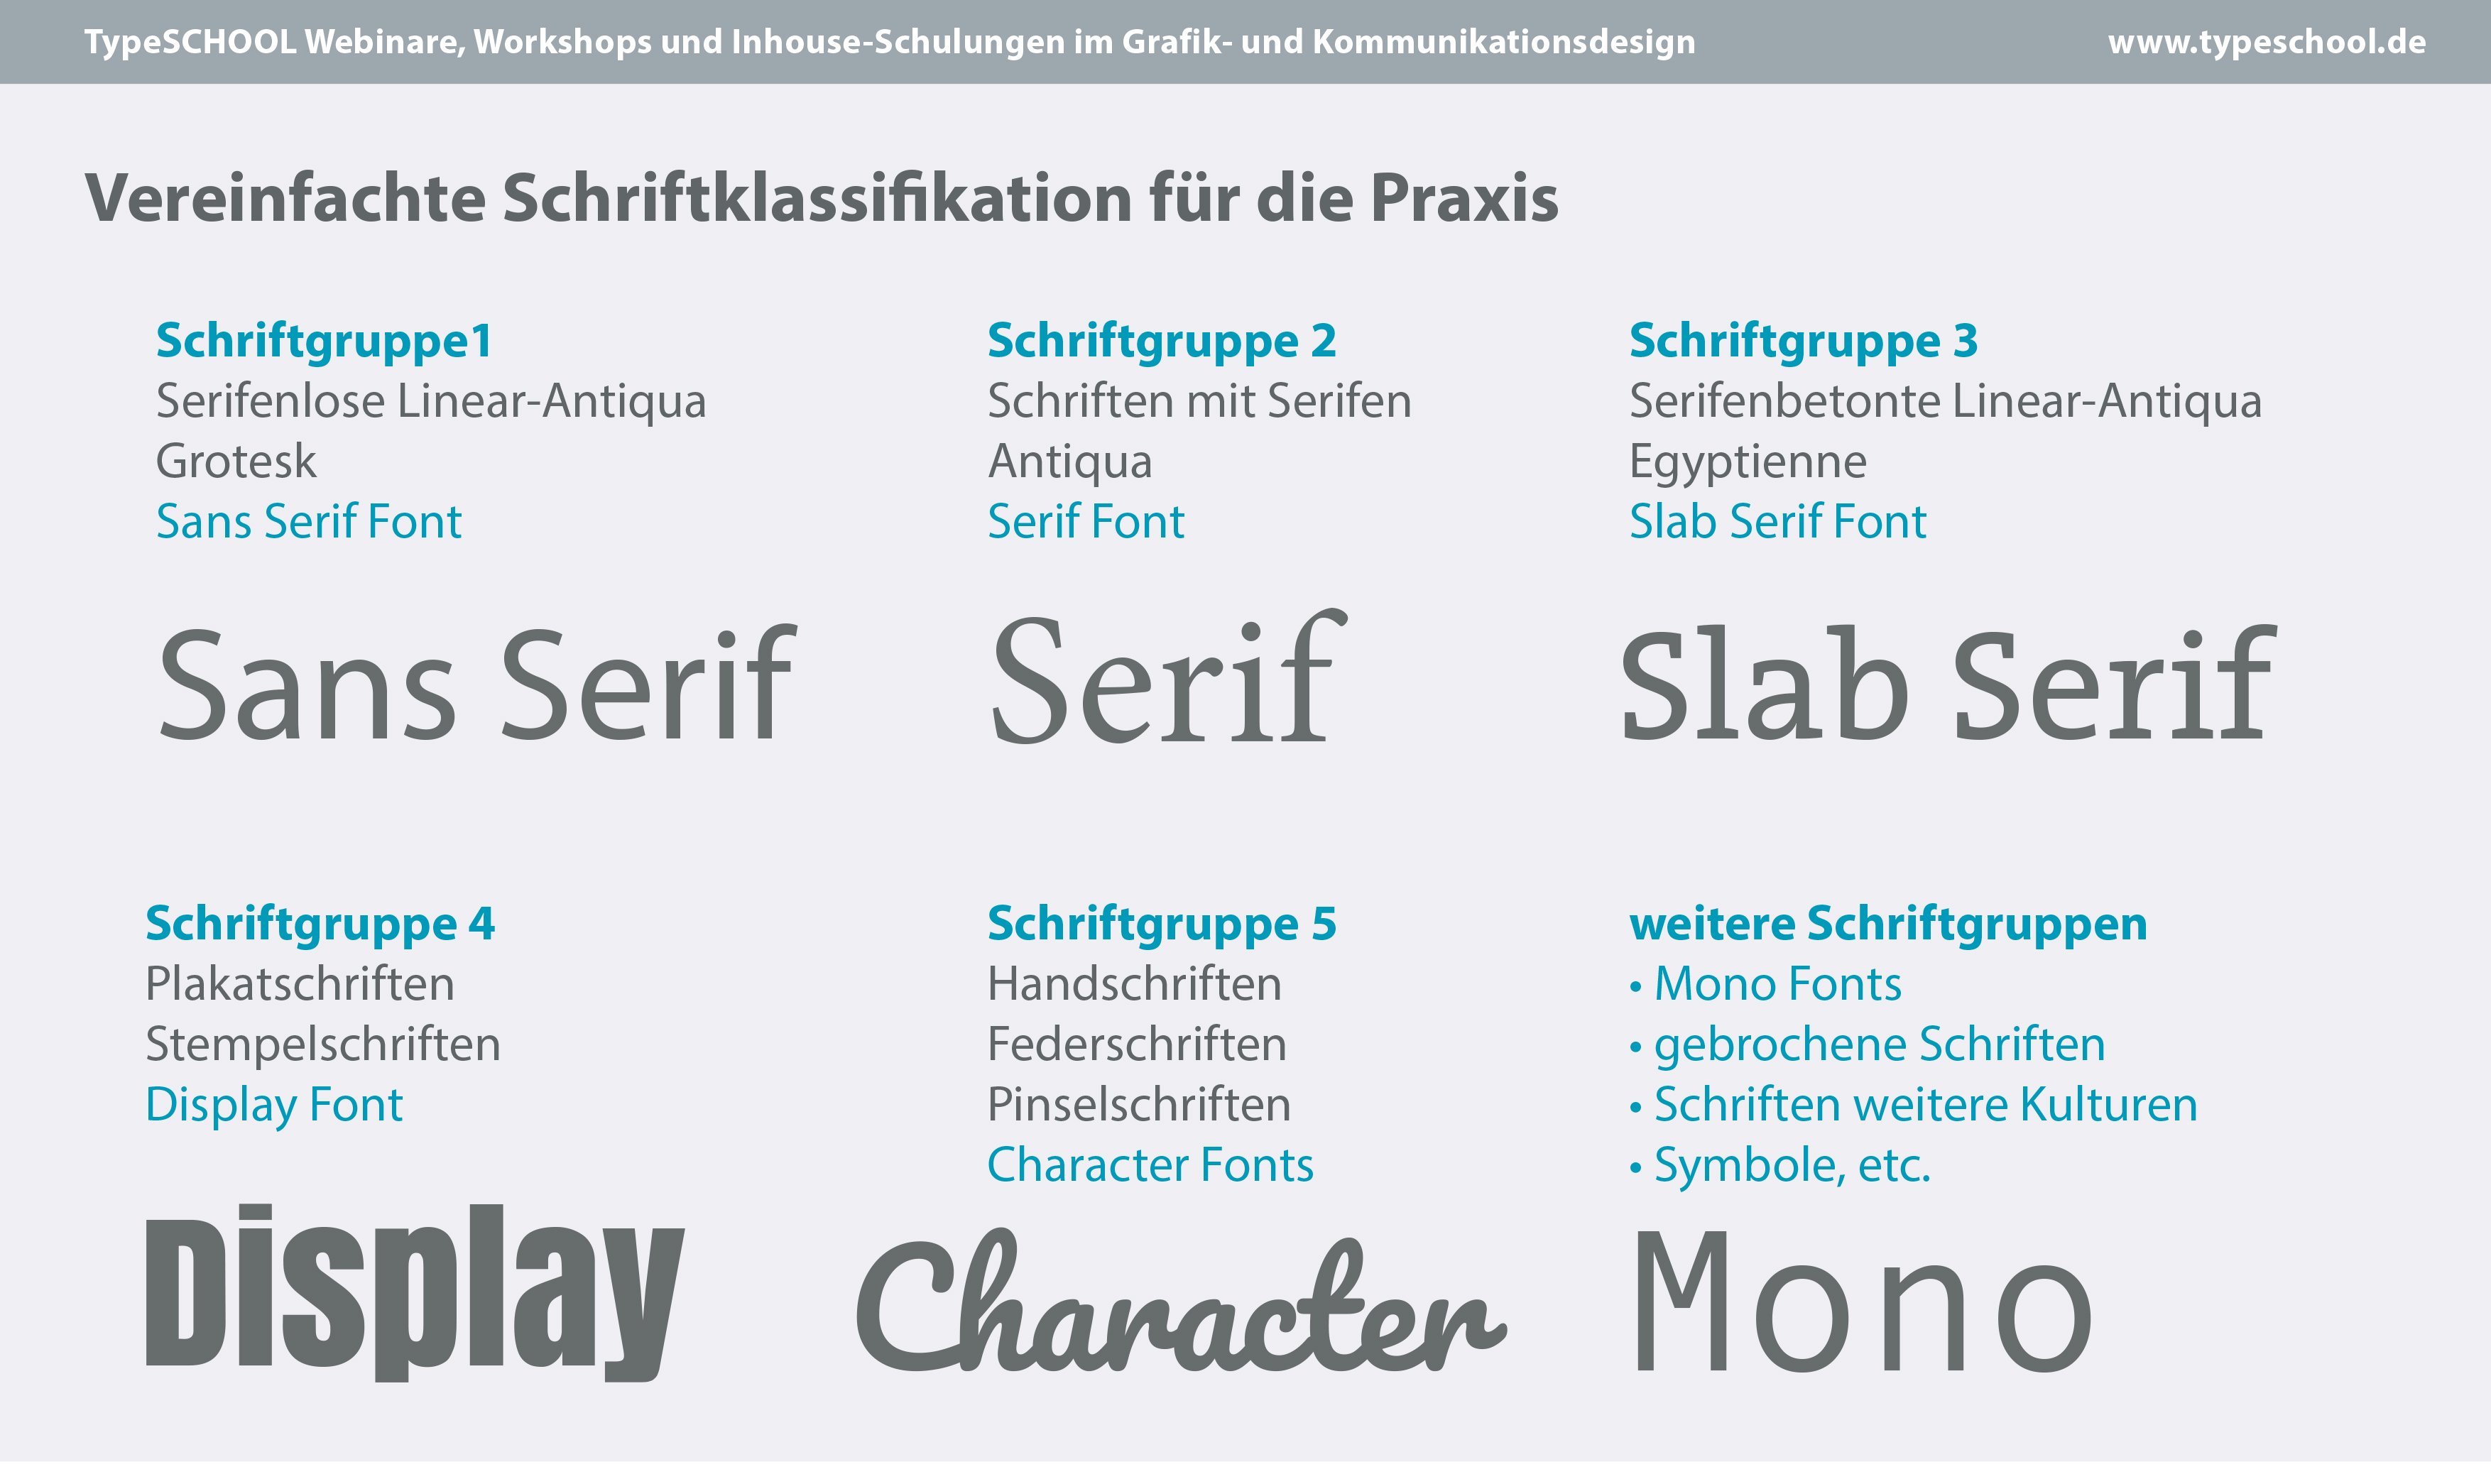 Typo Praxis 1 Moderne Schriftklassifikation Typografie Fur Die Design Praxis Typeschool Workshops Zu Typografie Layout In Der Kommunikation